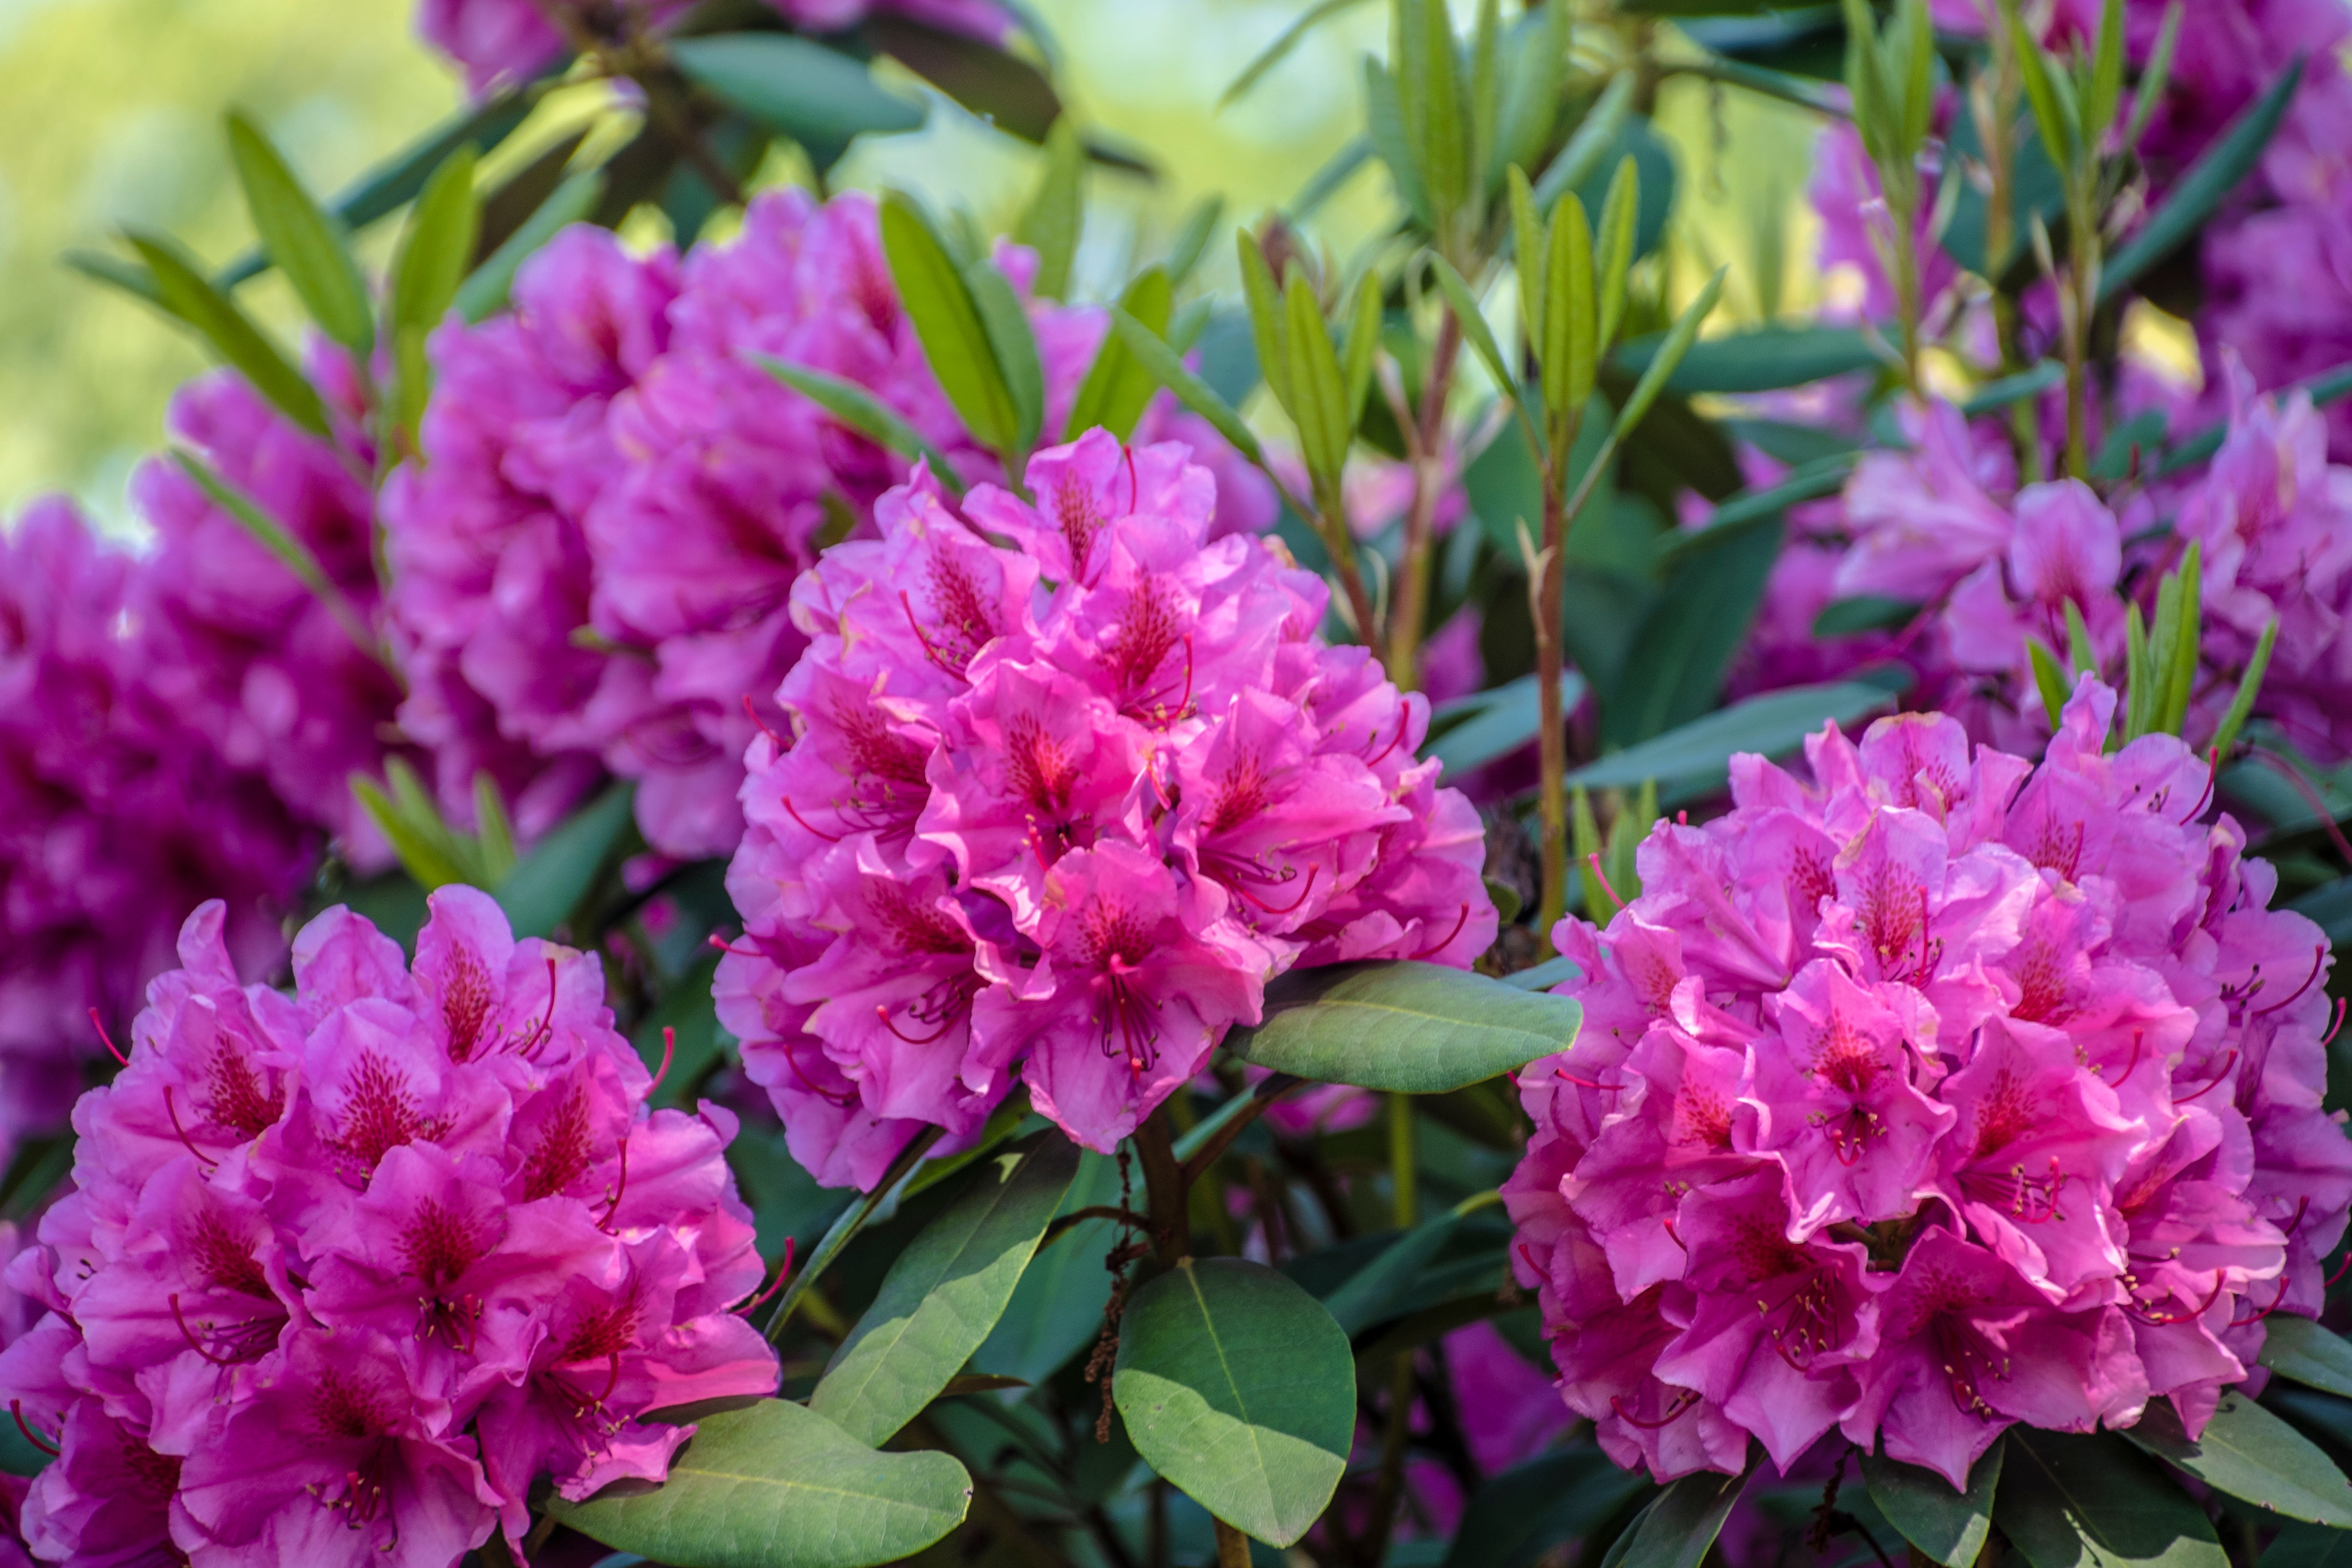 Les 20 plus belles fleurs roses au jardin : craquez pour cette couleur romantique ! Copyright (c) 2021 Brita Seifert/Shutterstock.